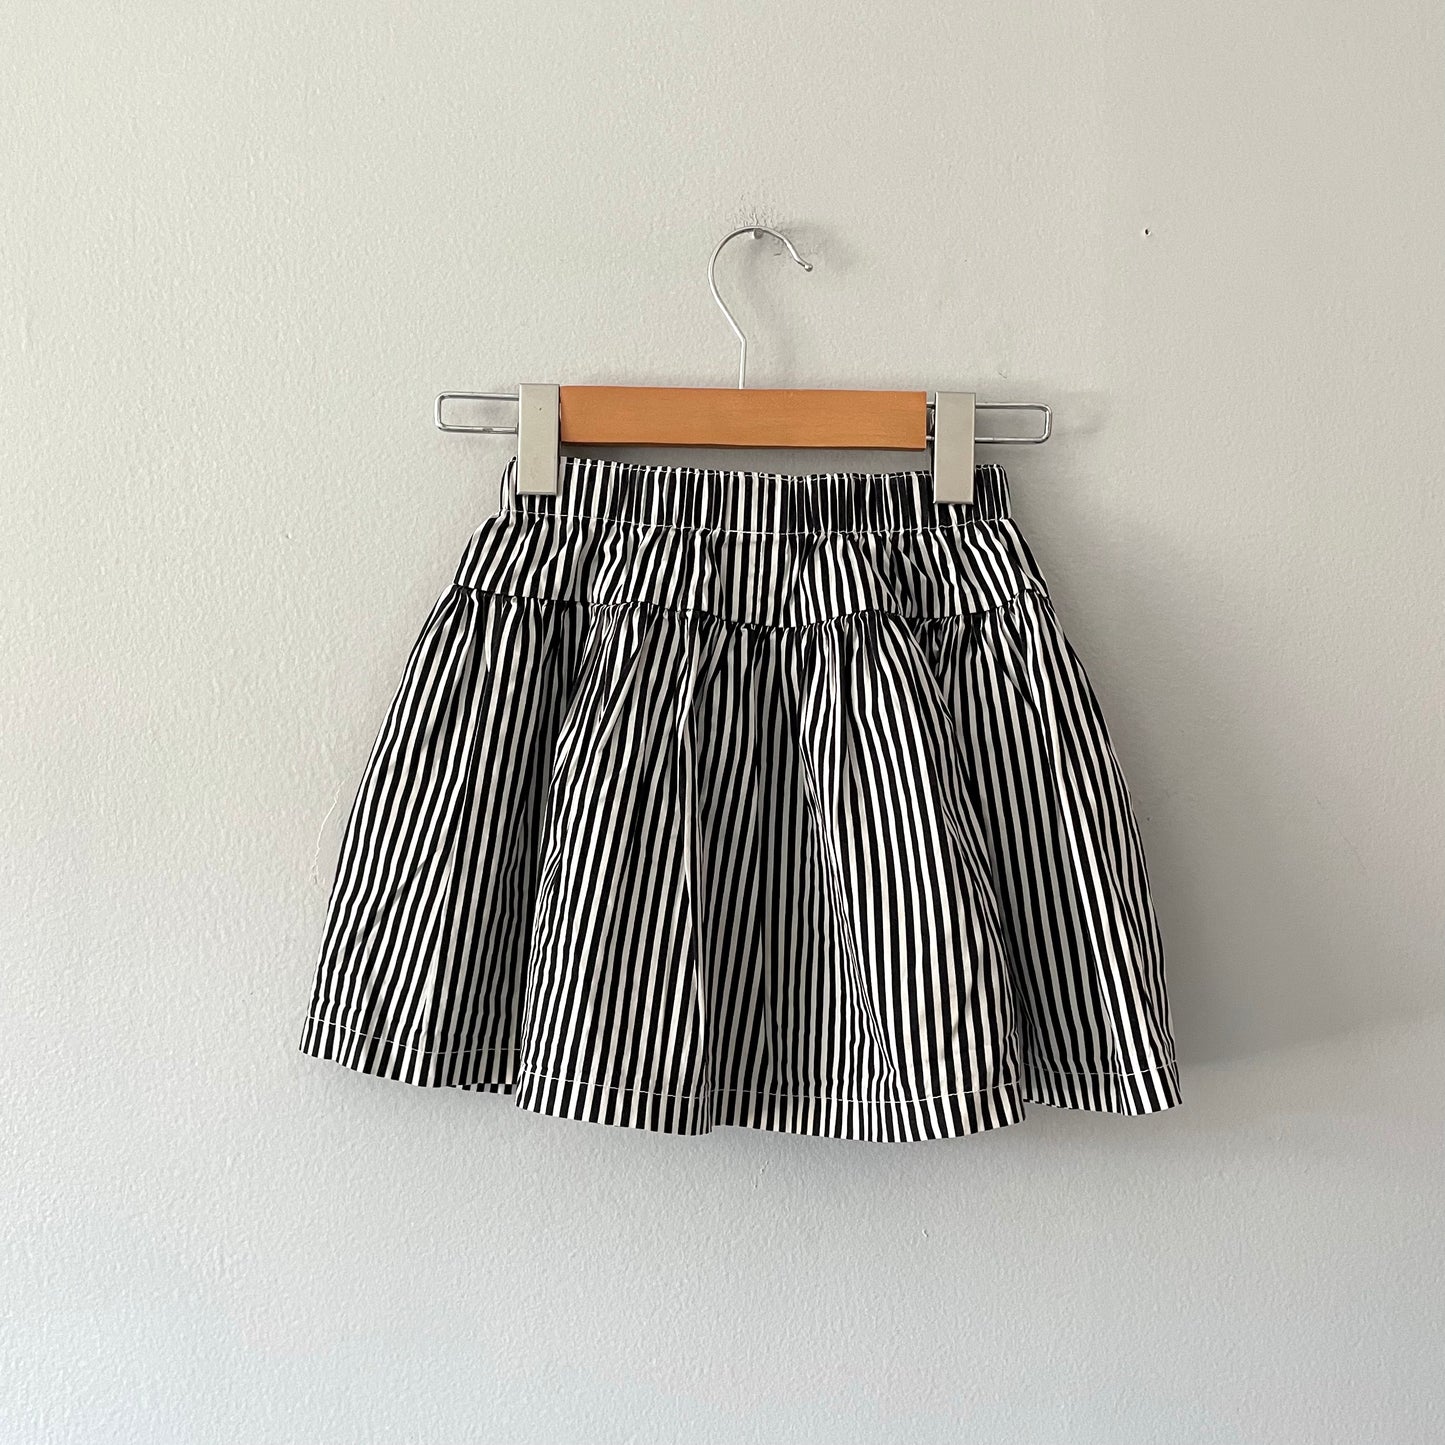 Kiki Kidswear / Striped skirt / 6Y